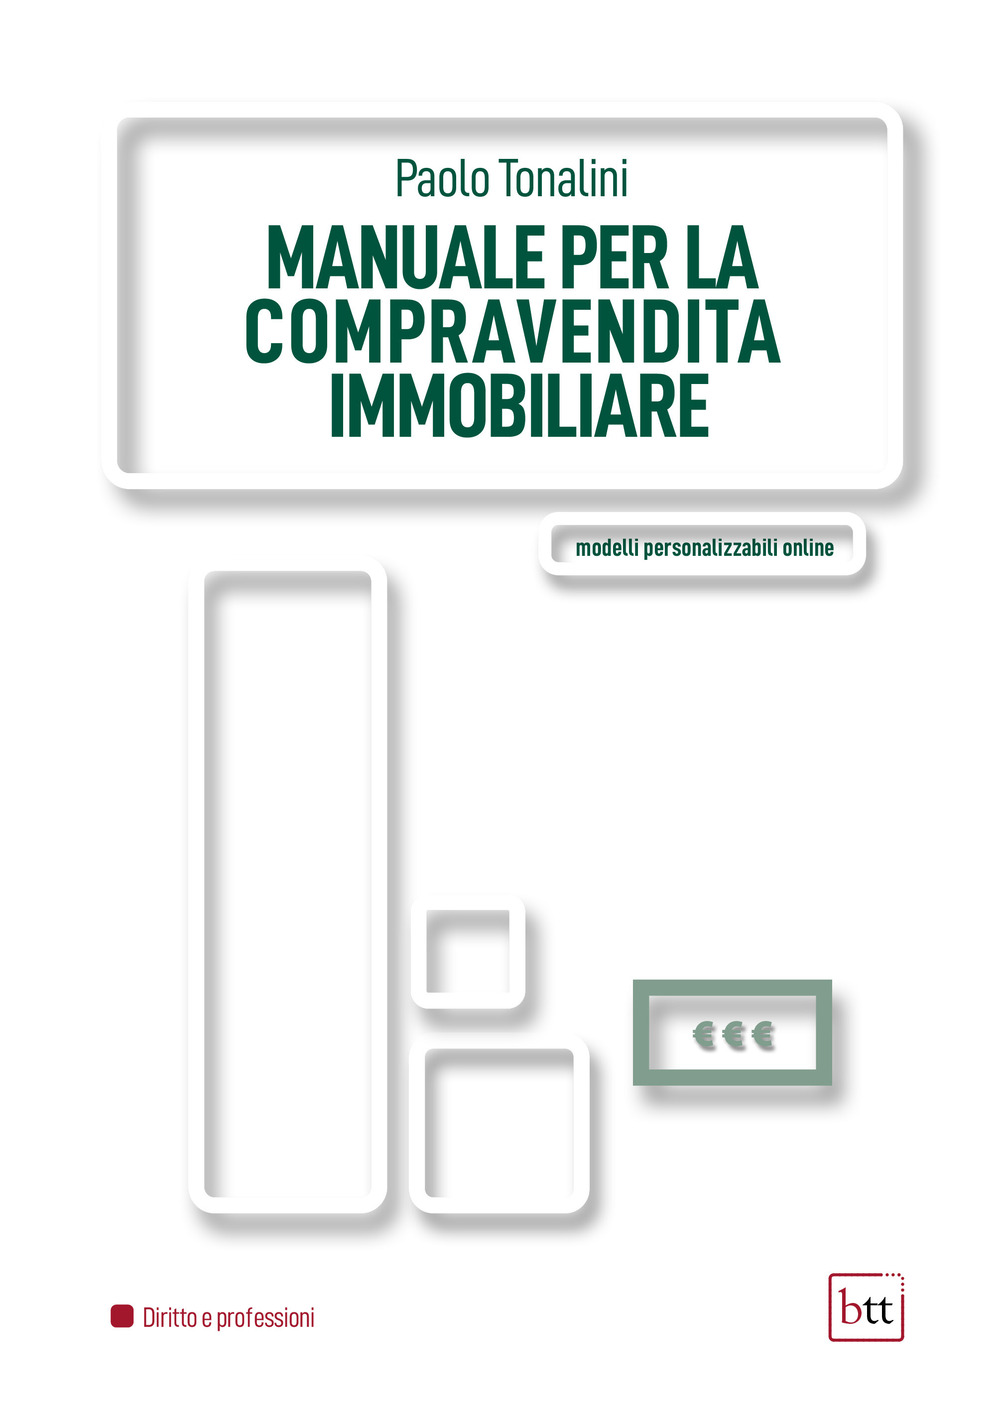 Libri Paolo Tonalini - Manuale Per La Compravendita Immobiliare NUOVO SIGILLATO, EDIZIONE DEL 25/03/2022 SUBITO DISPONIBILE